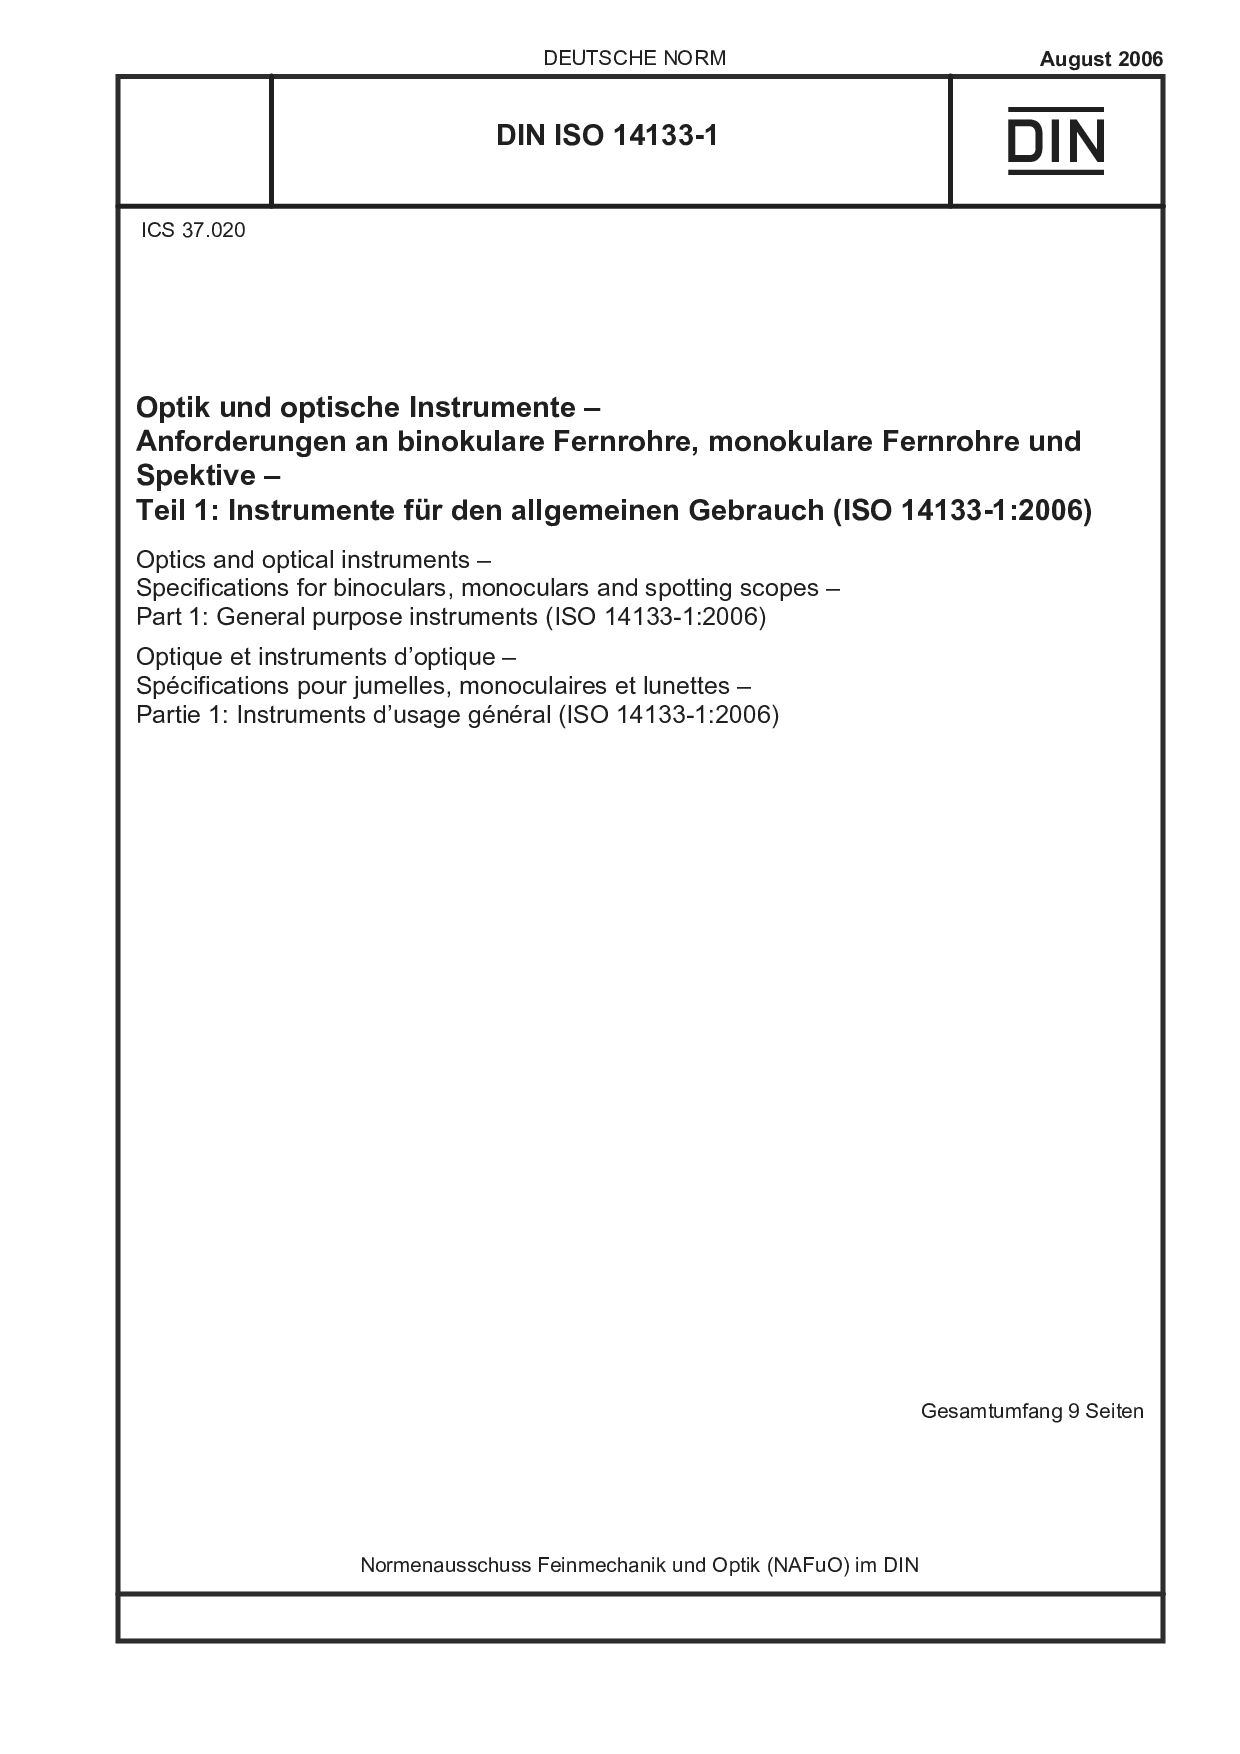 DIN ISO 14133-1:2006封面图